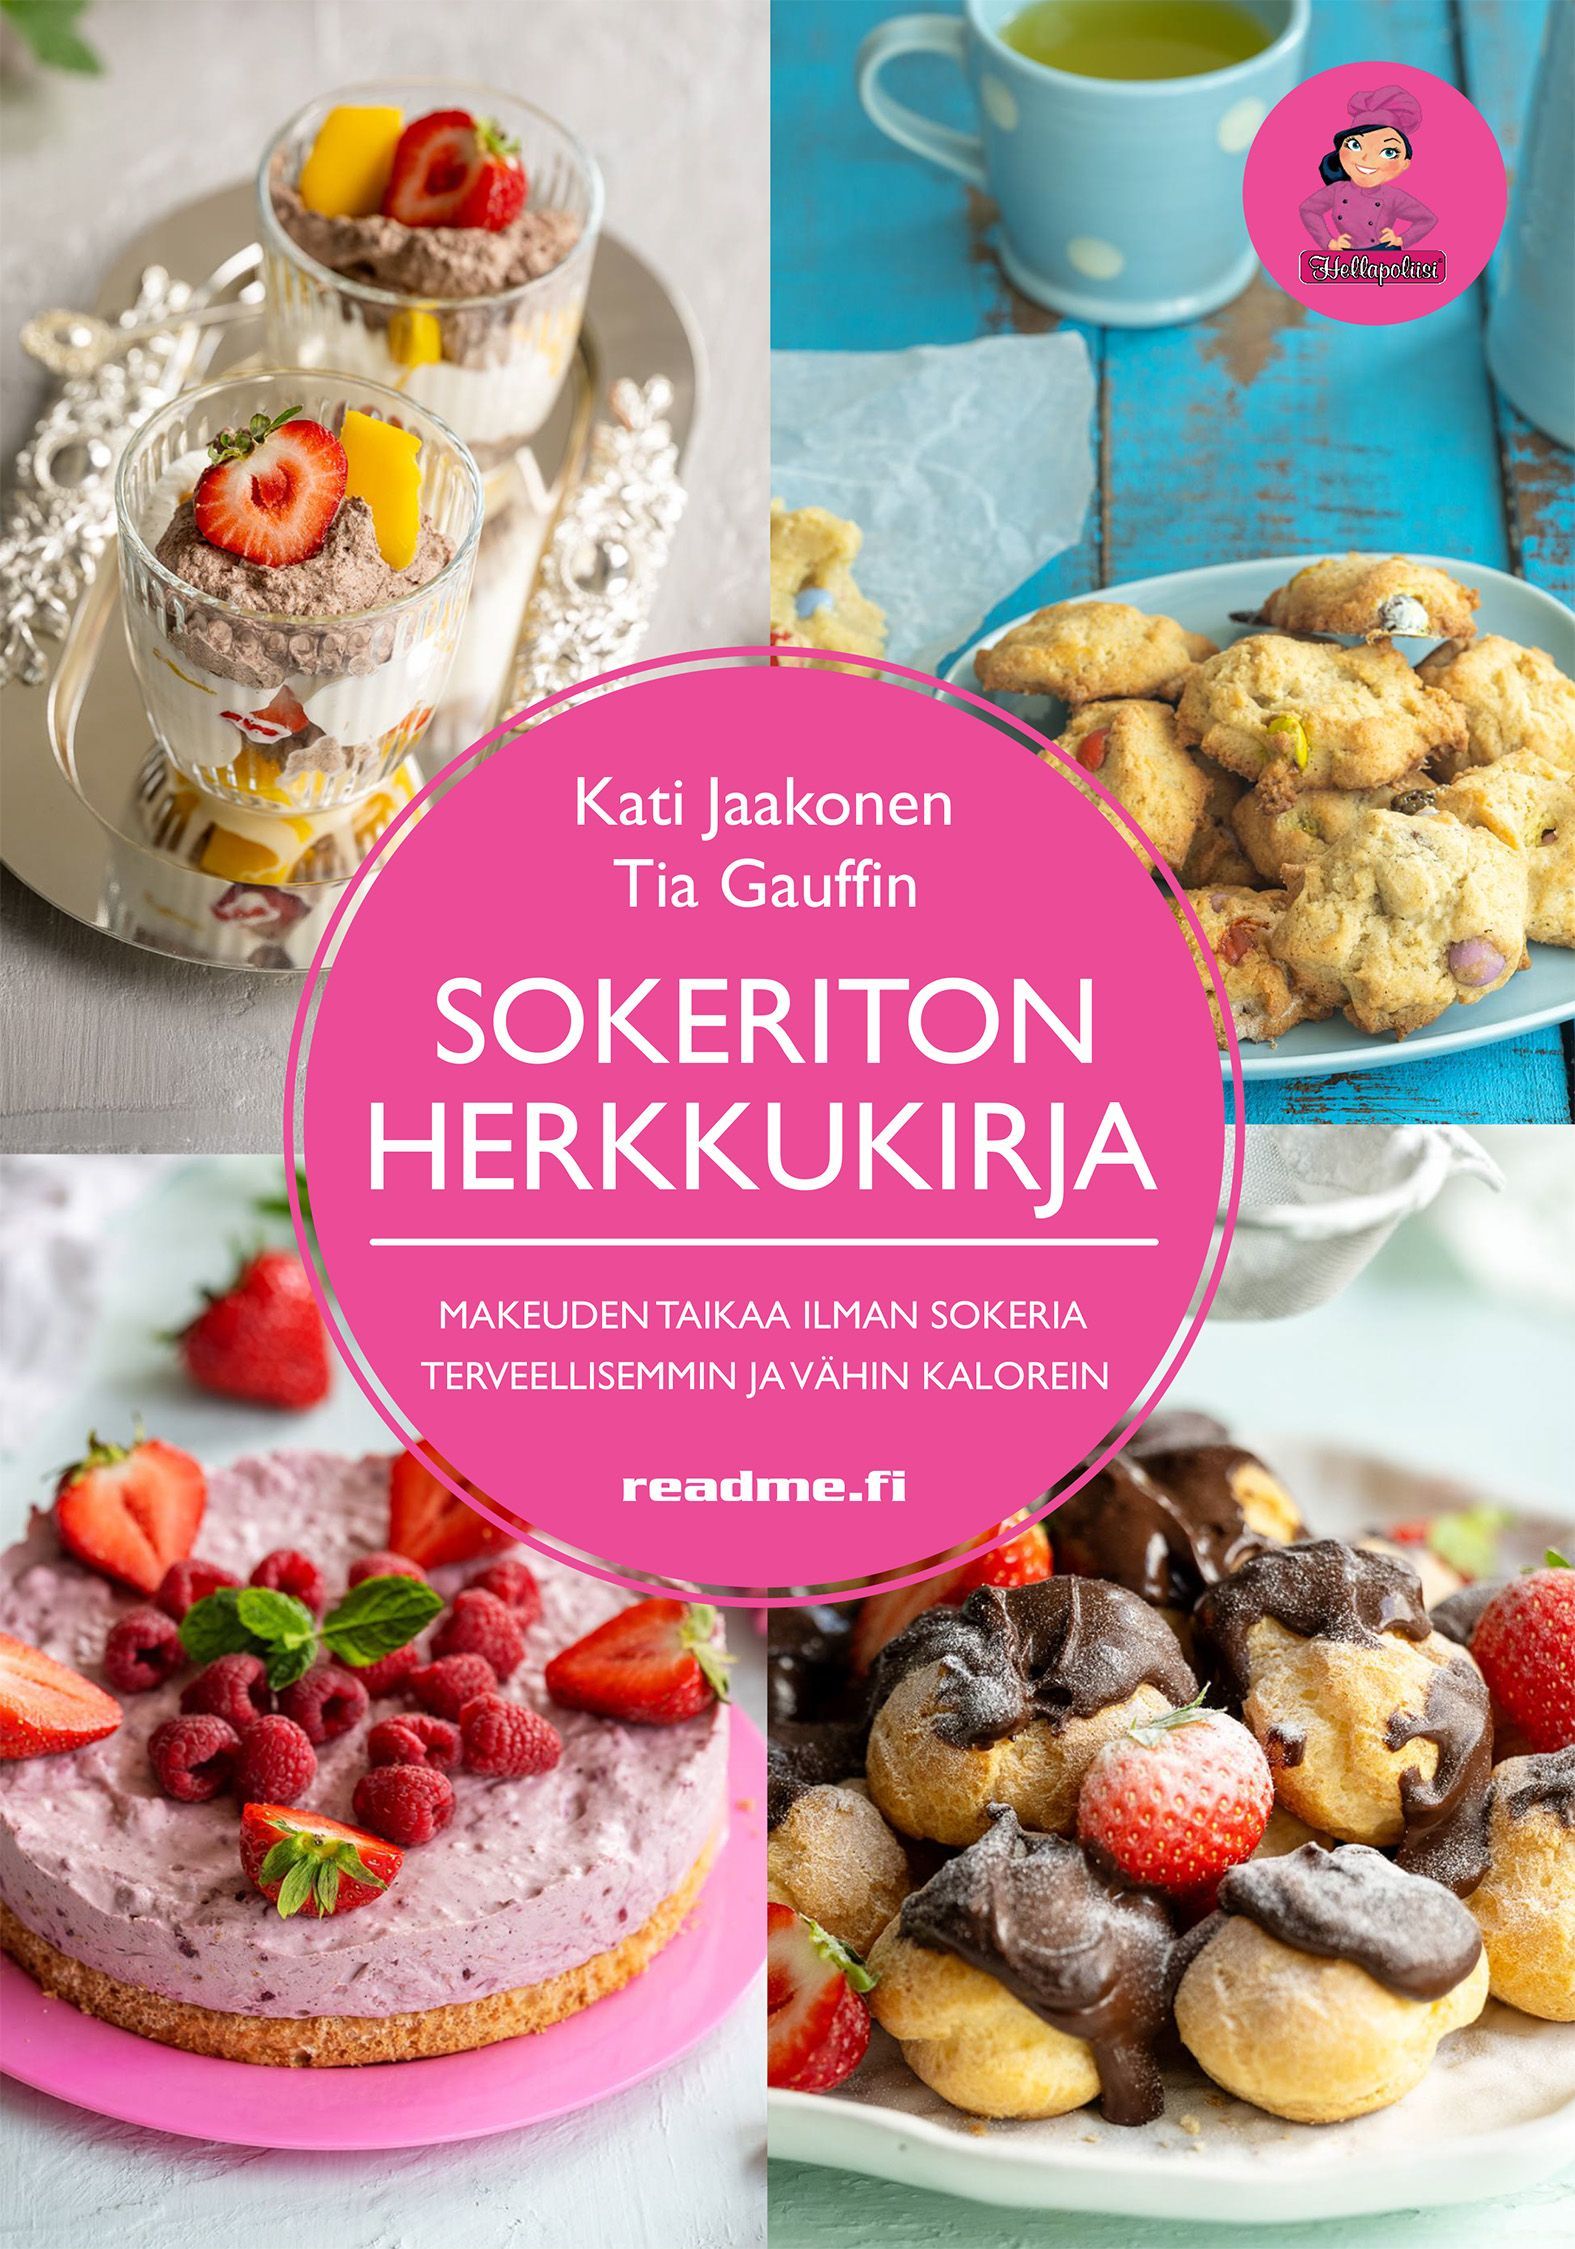 Kati Jaakonen & Tia Gauffin : Sokeriton herkkukirja